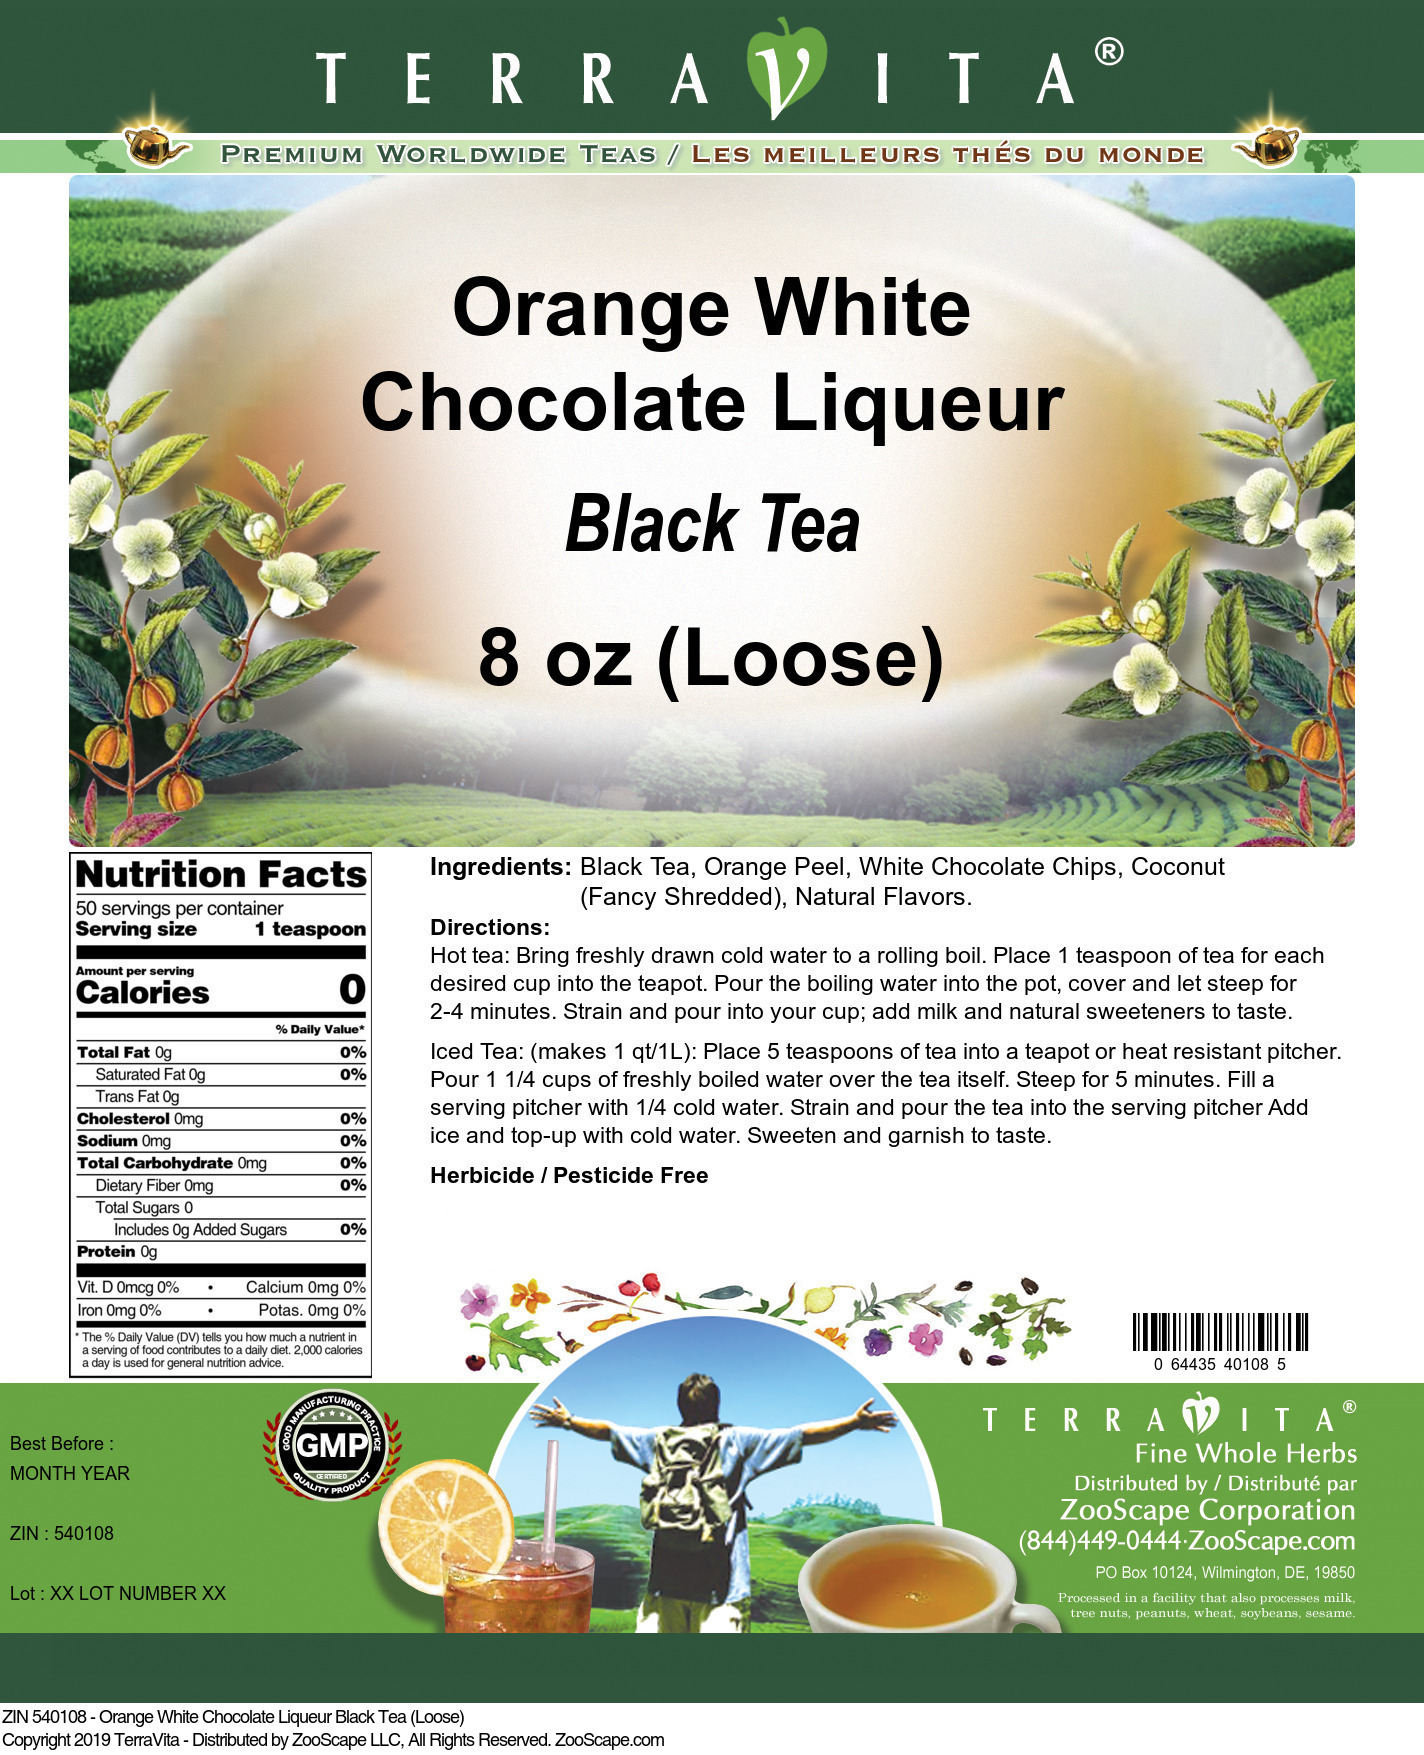 Orange White Chocolate Liqueur Black Tea (Loose) - Label